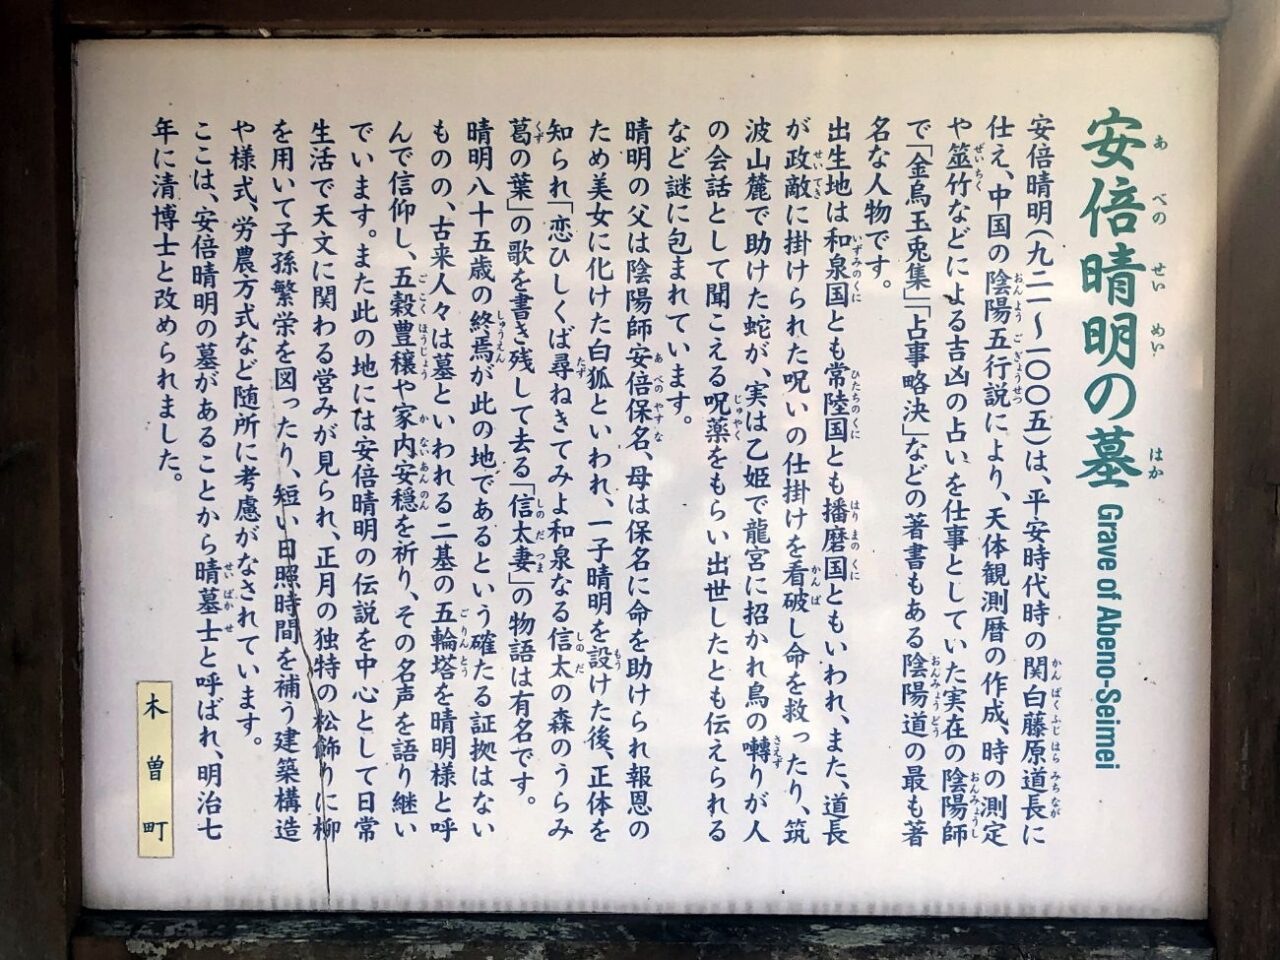 【箱根への行き方】小田急ロマンスカーと箱根登山電車で東京から箱根へいく方法